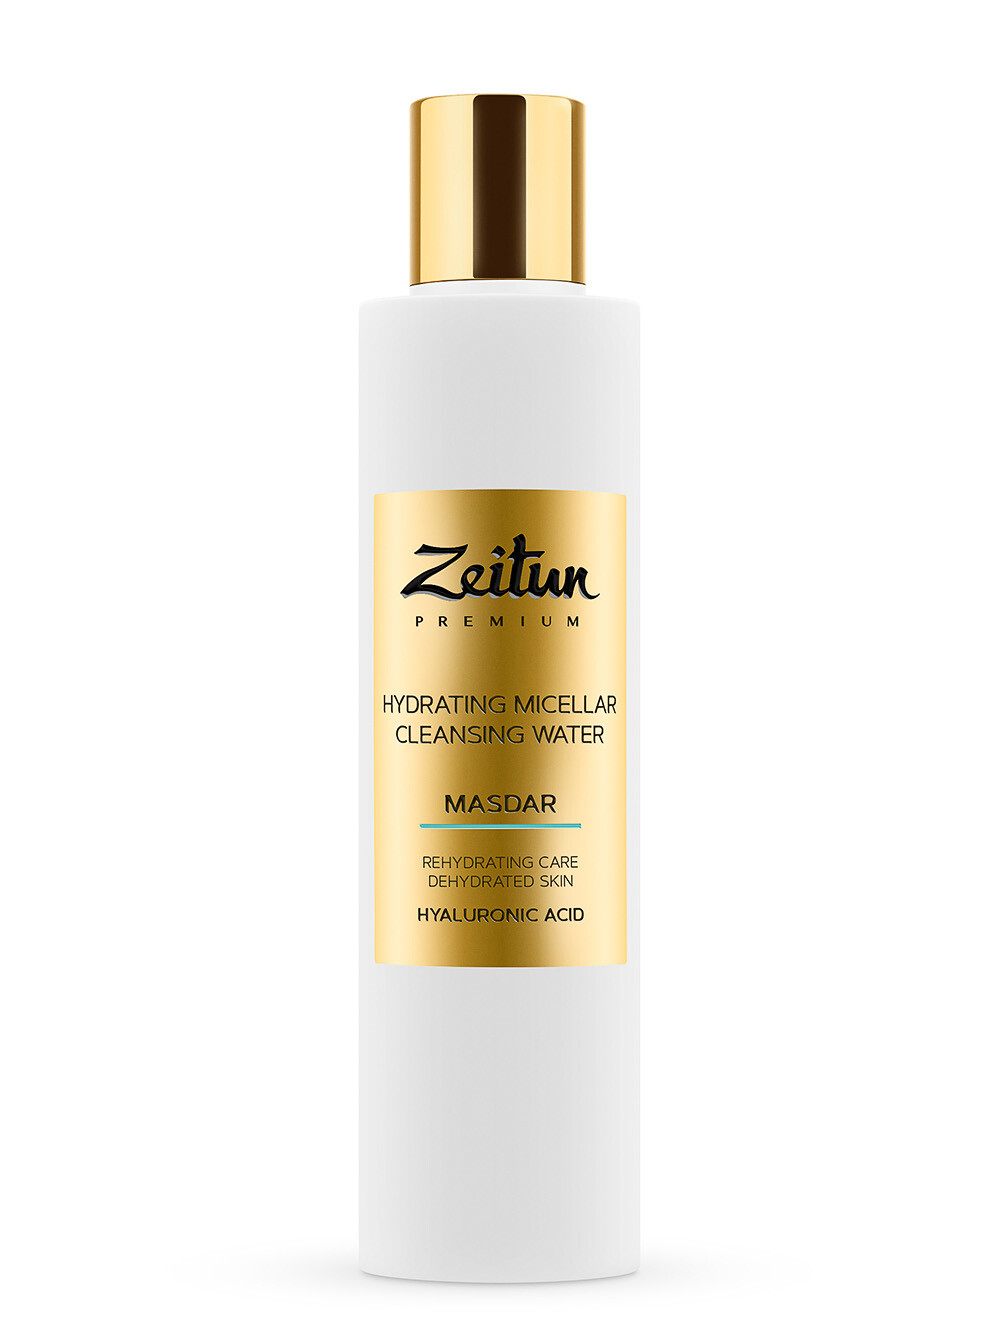 Zeitun Premium Masdar Hydrating Micellar Мицеллярная вода для лица с гиалуроновой кислотой